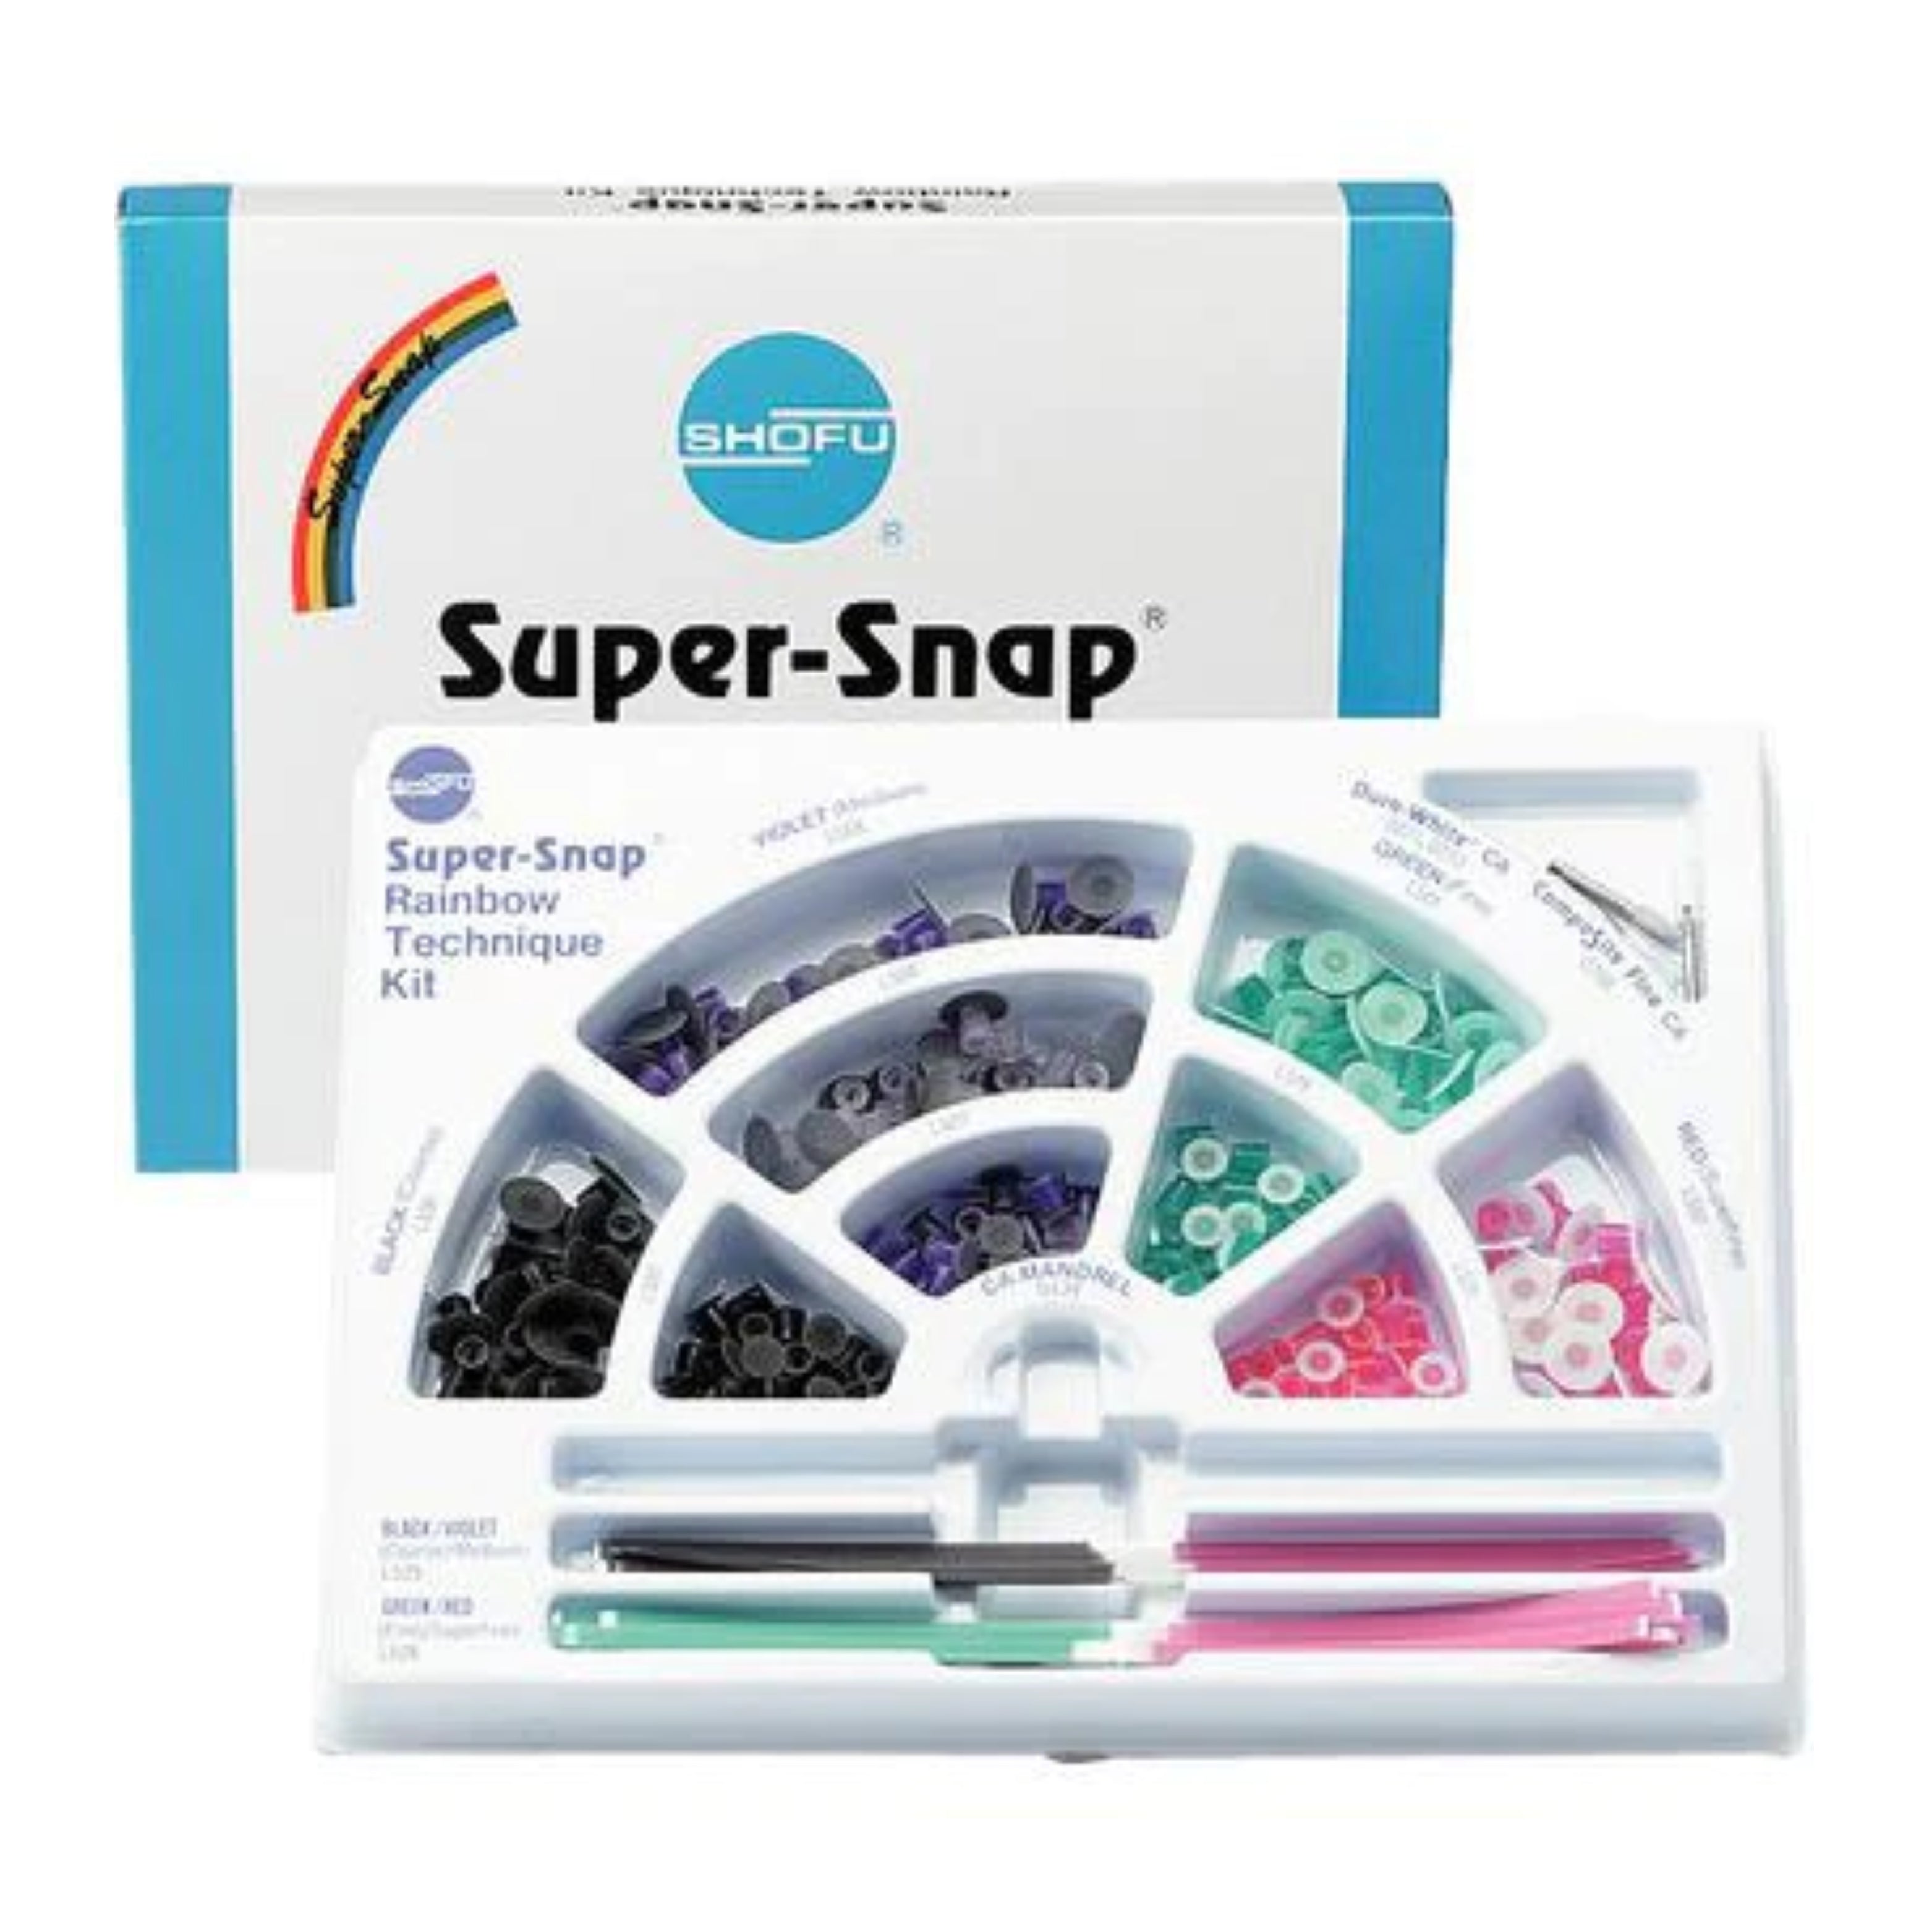 shofu-super-snap-rainbow-dental-polishing-kit